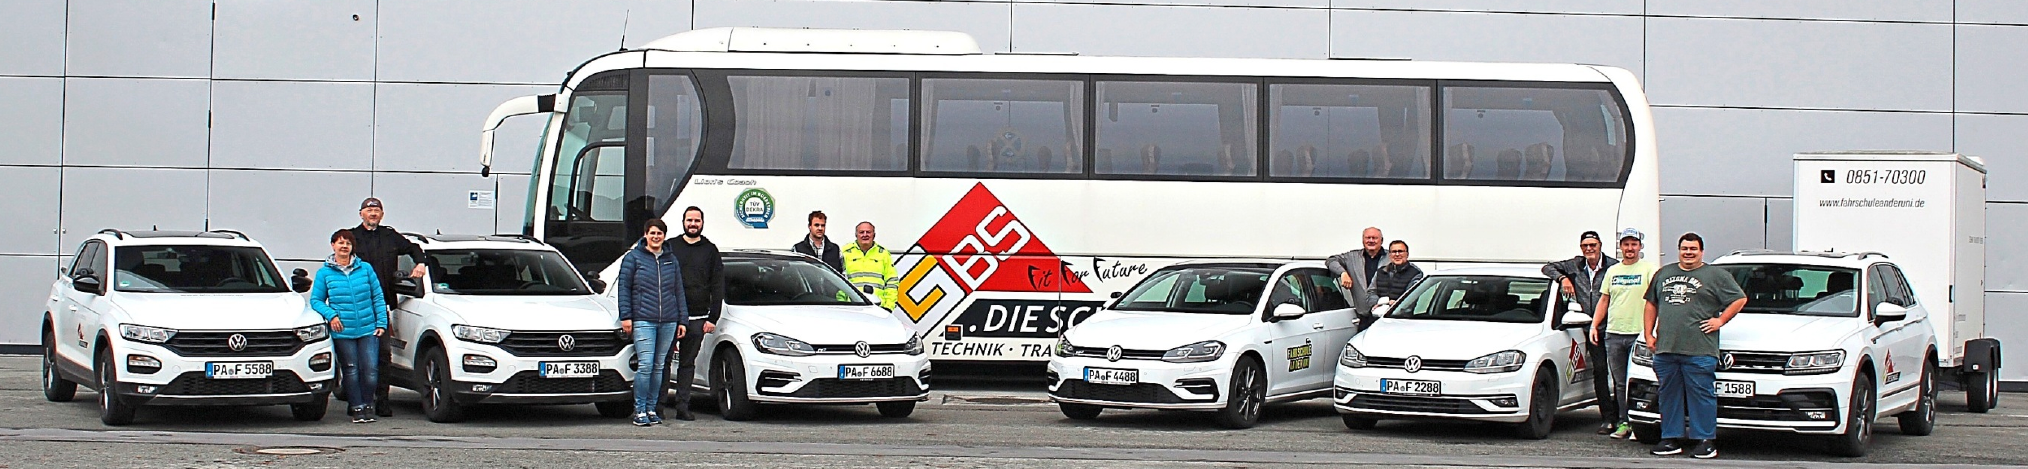 Zusammen mit dem kompetenten und gut geschulten Team der GBS Passau steht für jegliche Ausbildung das passende Fahrzeug bereit - hier nur ein kleiner Ausschnitt der Bandbreite der GBS-Fahrzeuge.